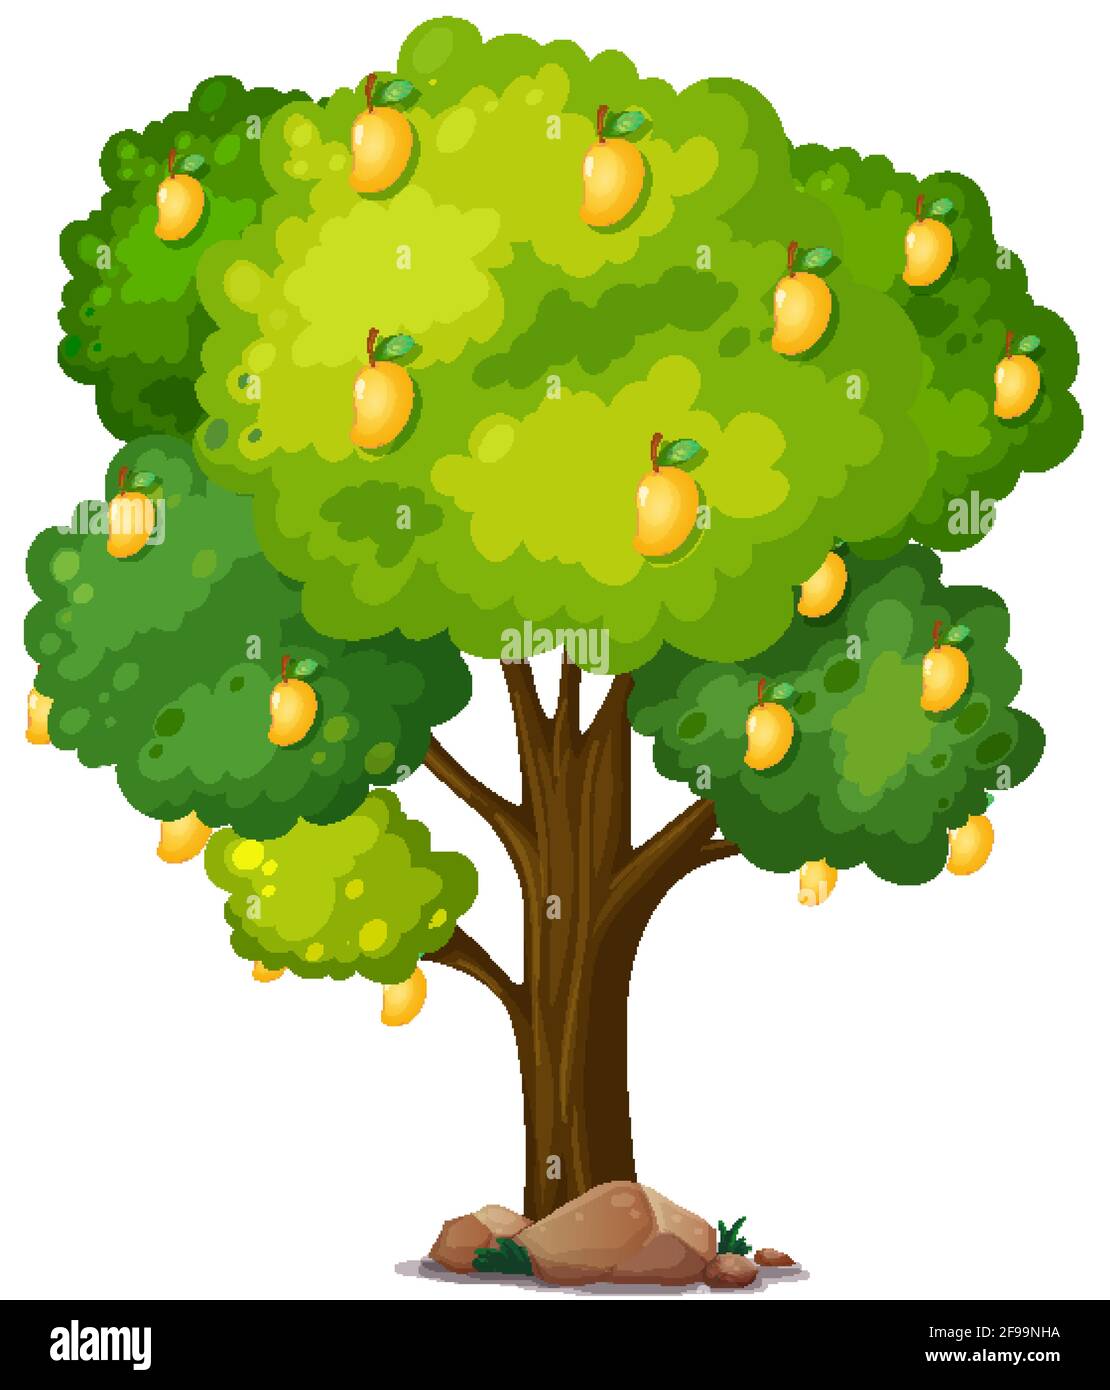 Yellow mango tree isolated on white background illustration Stock ...